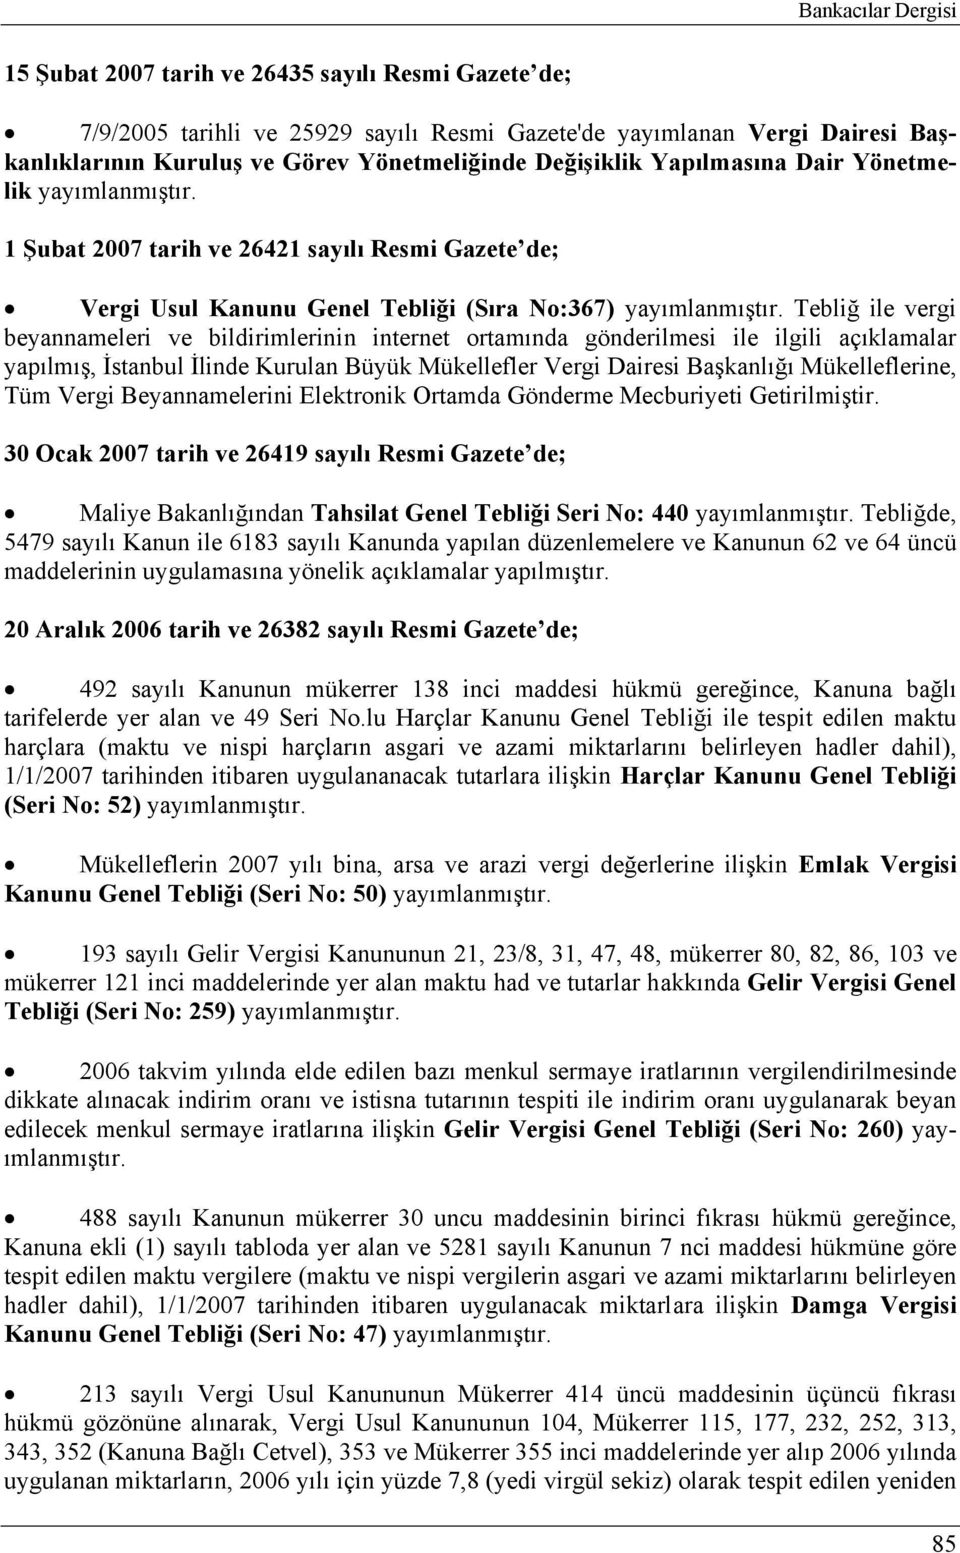 Tebliğ ile vergi beyannameleri ve bildirimlerinin internet ortamında gönderilmesi ile ilgili açıklamalar yapılmış, İstanbul İlinde Kurulan Büyük Mükellefler Vergi Dairesi Başkanlığı Mükelleflerine,